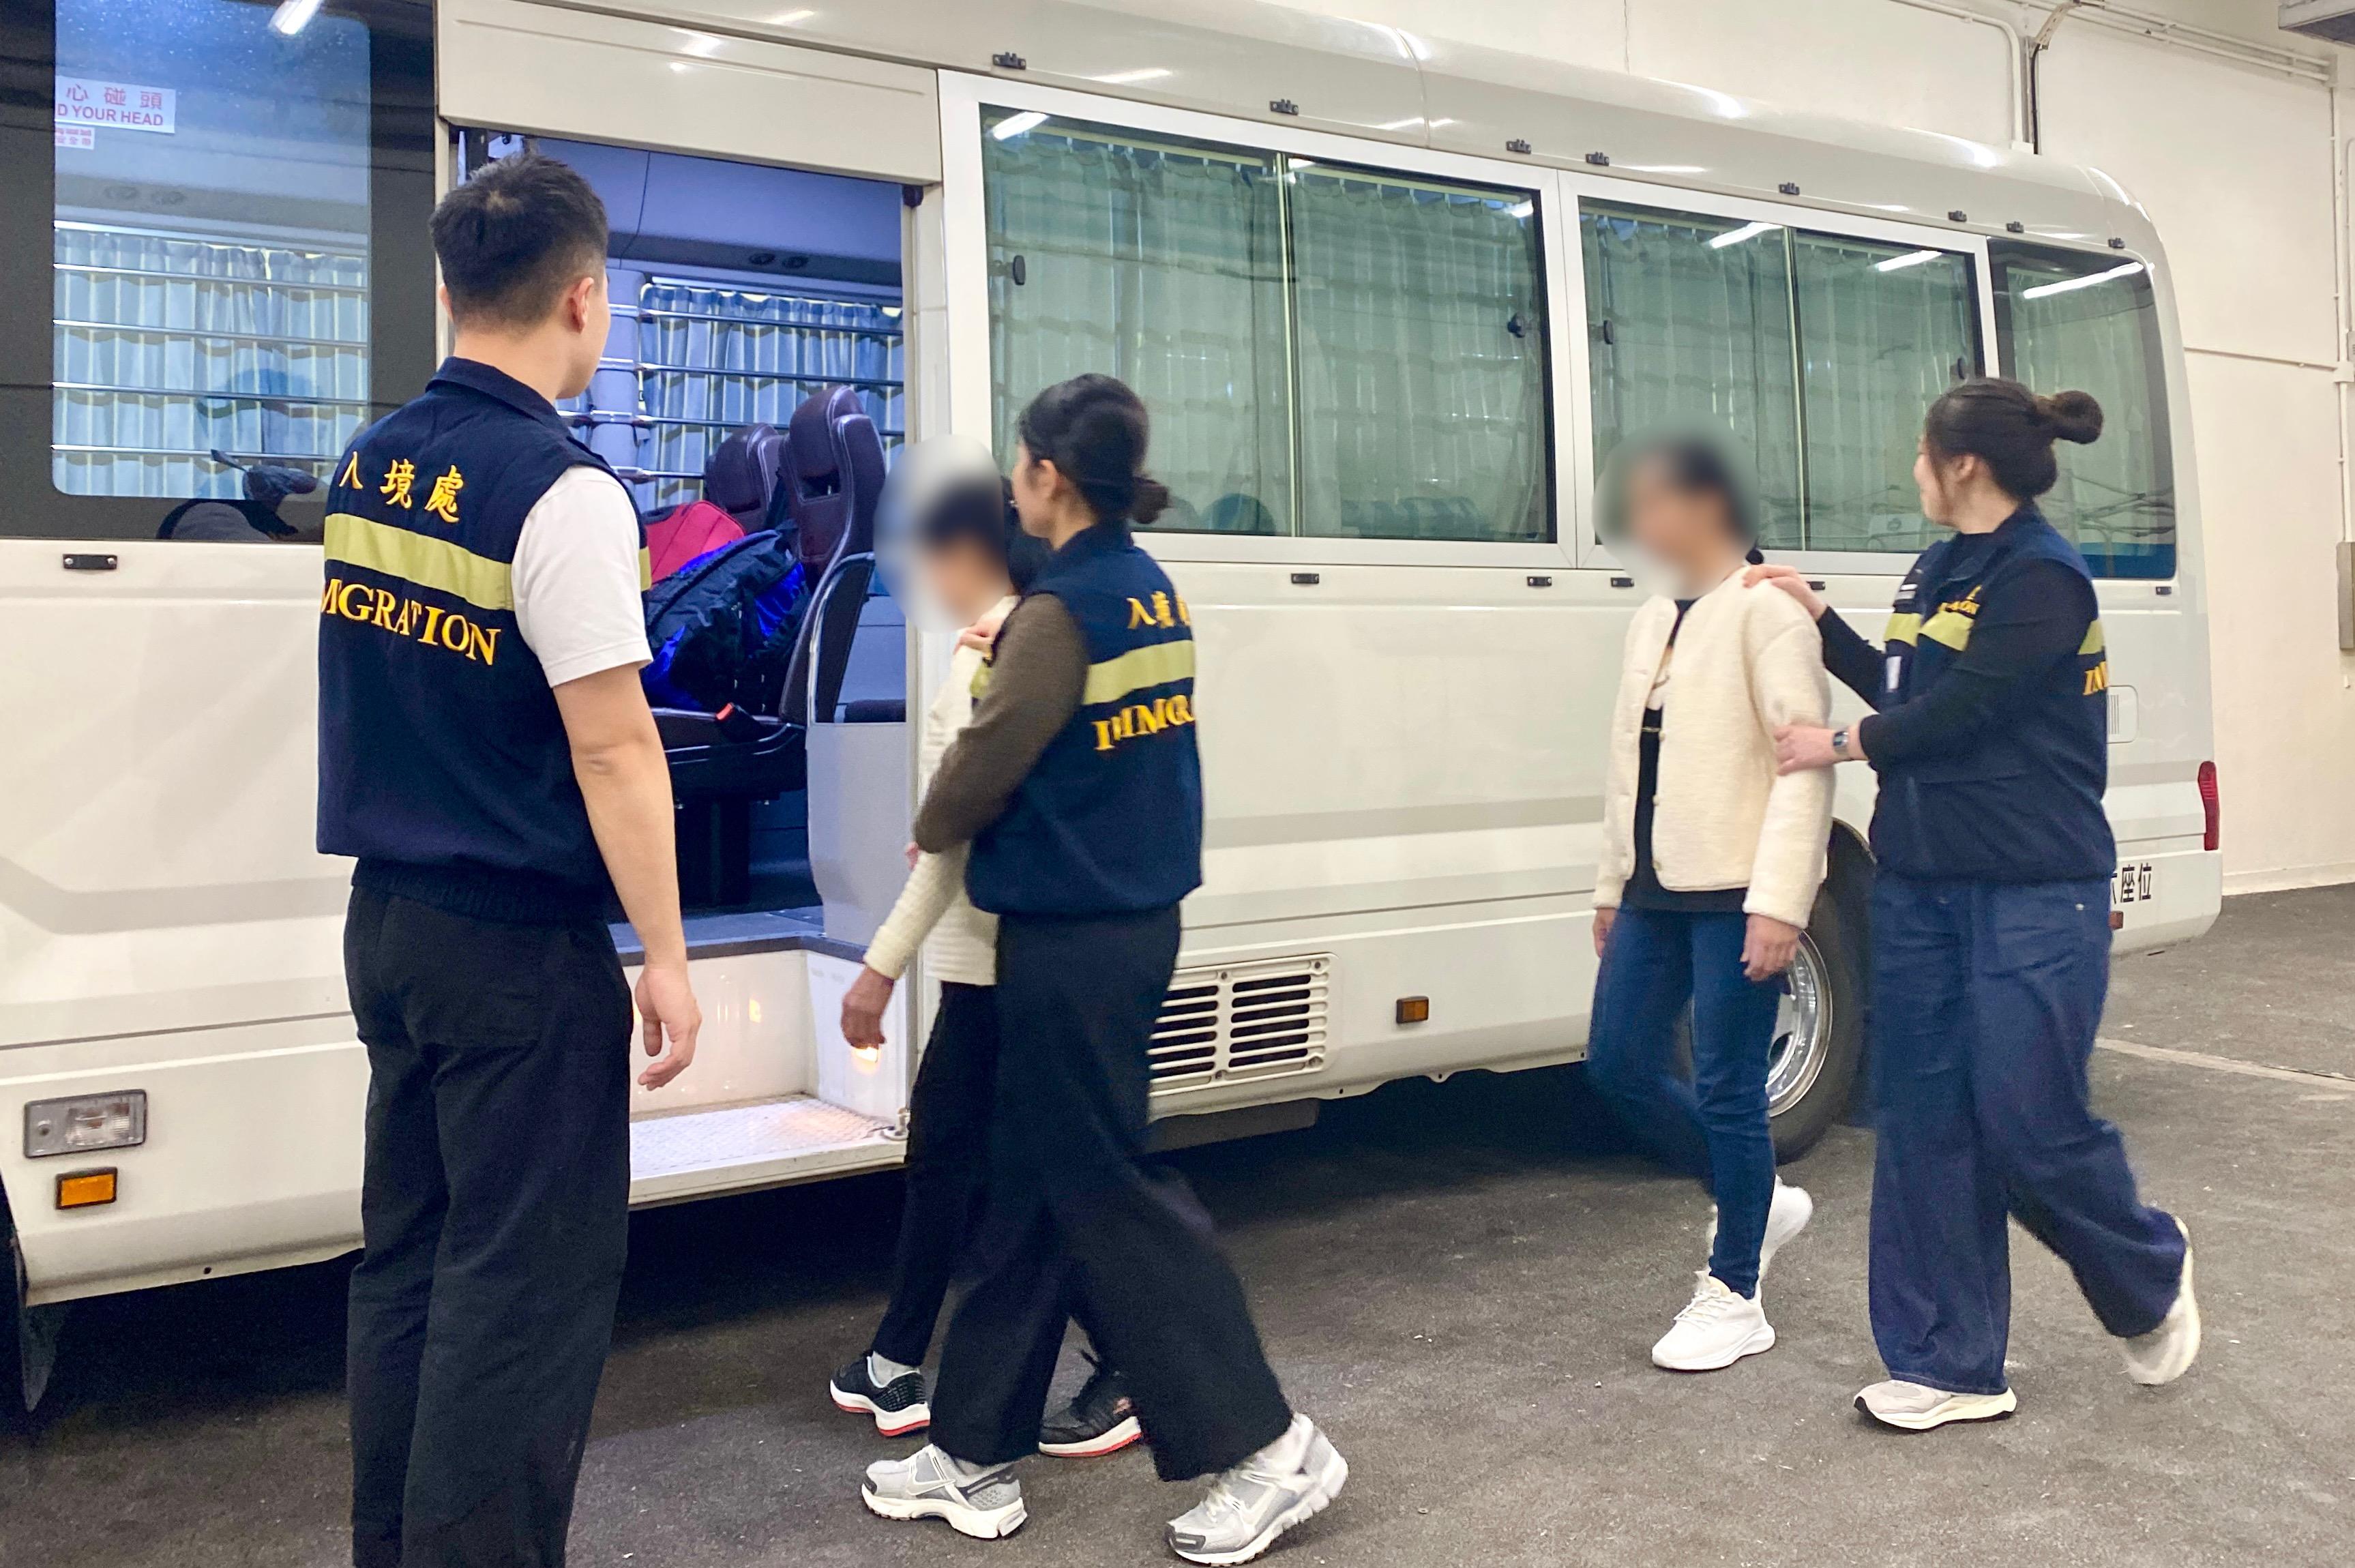 入境事務處（入境處）今日（十一月二十九日）執行遣送行動，將24名越南籍非法入境者遣返越南。圖示被遣返人士在入境處人員押送下離開羈押地點前往機場。